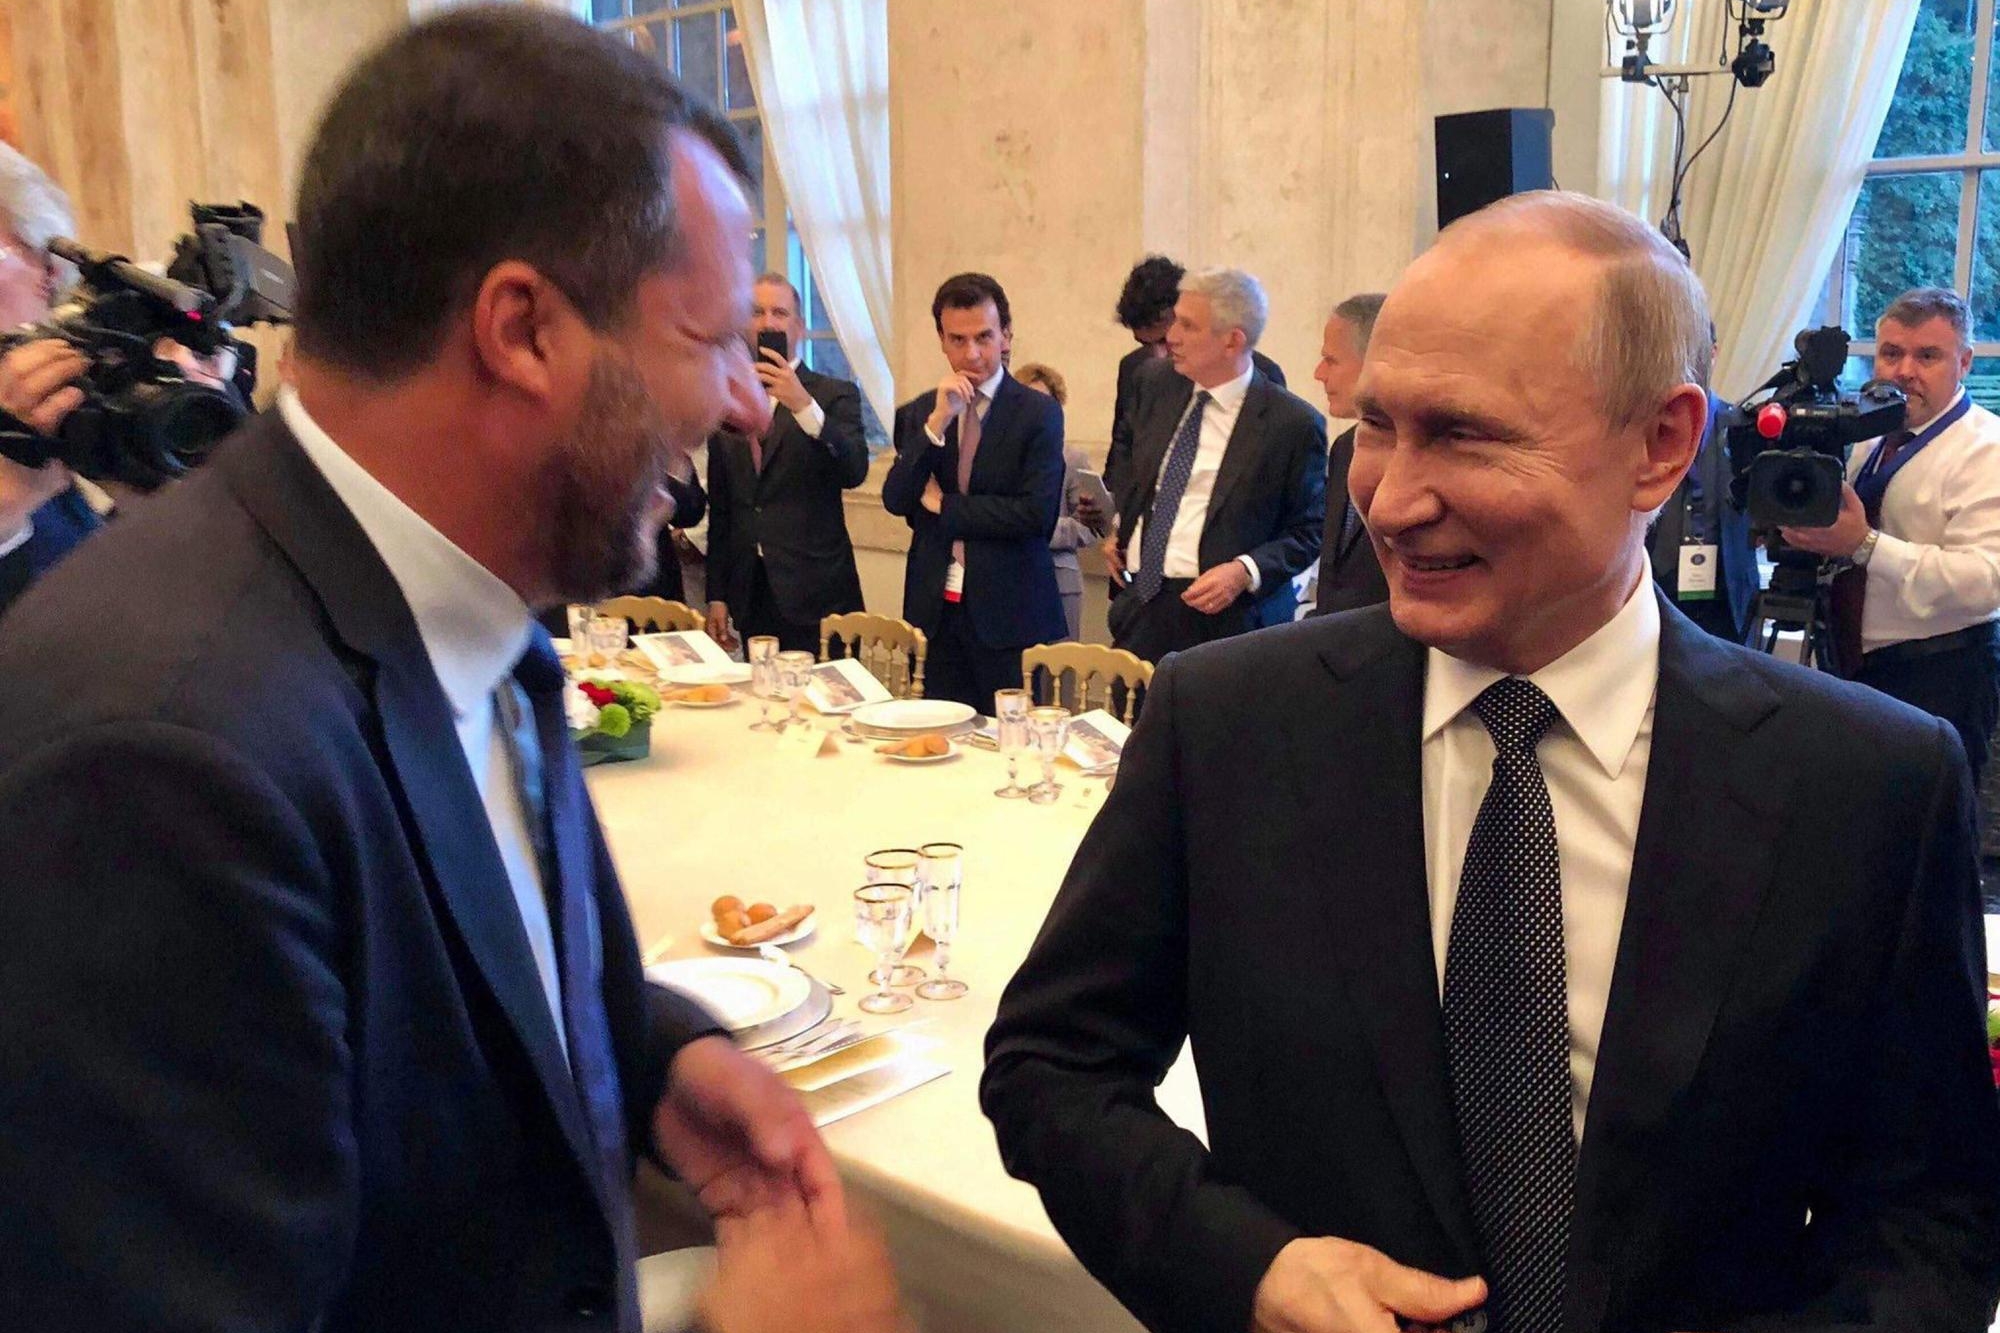 Il vicepremier e ministro dell'Interno, Matteo Salvini, con il presidente russo Vladimir Putin in una immagine pubblicata sul suo profilo Twitter, 04 luglio 2019. TWITTER MATTEO SALVINI +++ATTENZIONE LA FOTO NON PUO' ESSERE PUBBLICATA O RIPRODOTTA SENZA L'AUTORIZZAZIONE DELLA FONTE DI ORIGINE CUI SI RINVIA+++